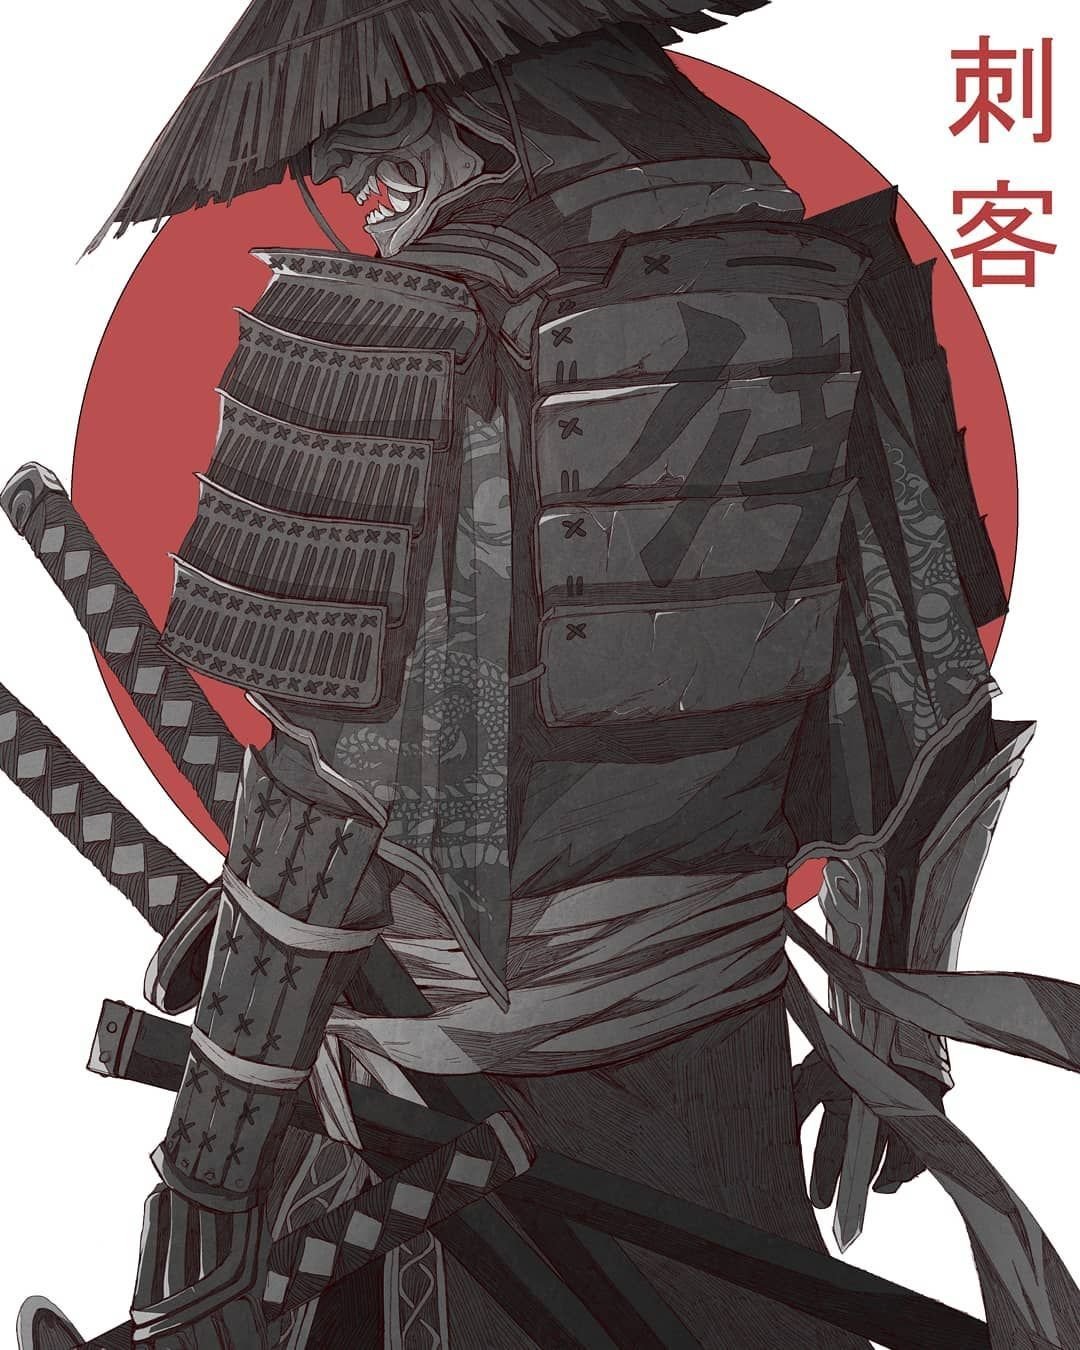 иллюстрации для стима самурай фото 68